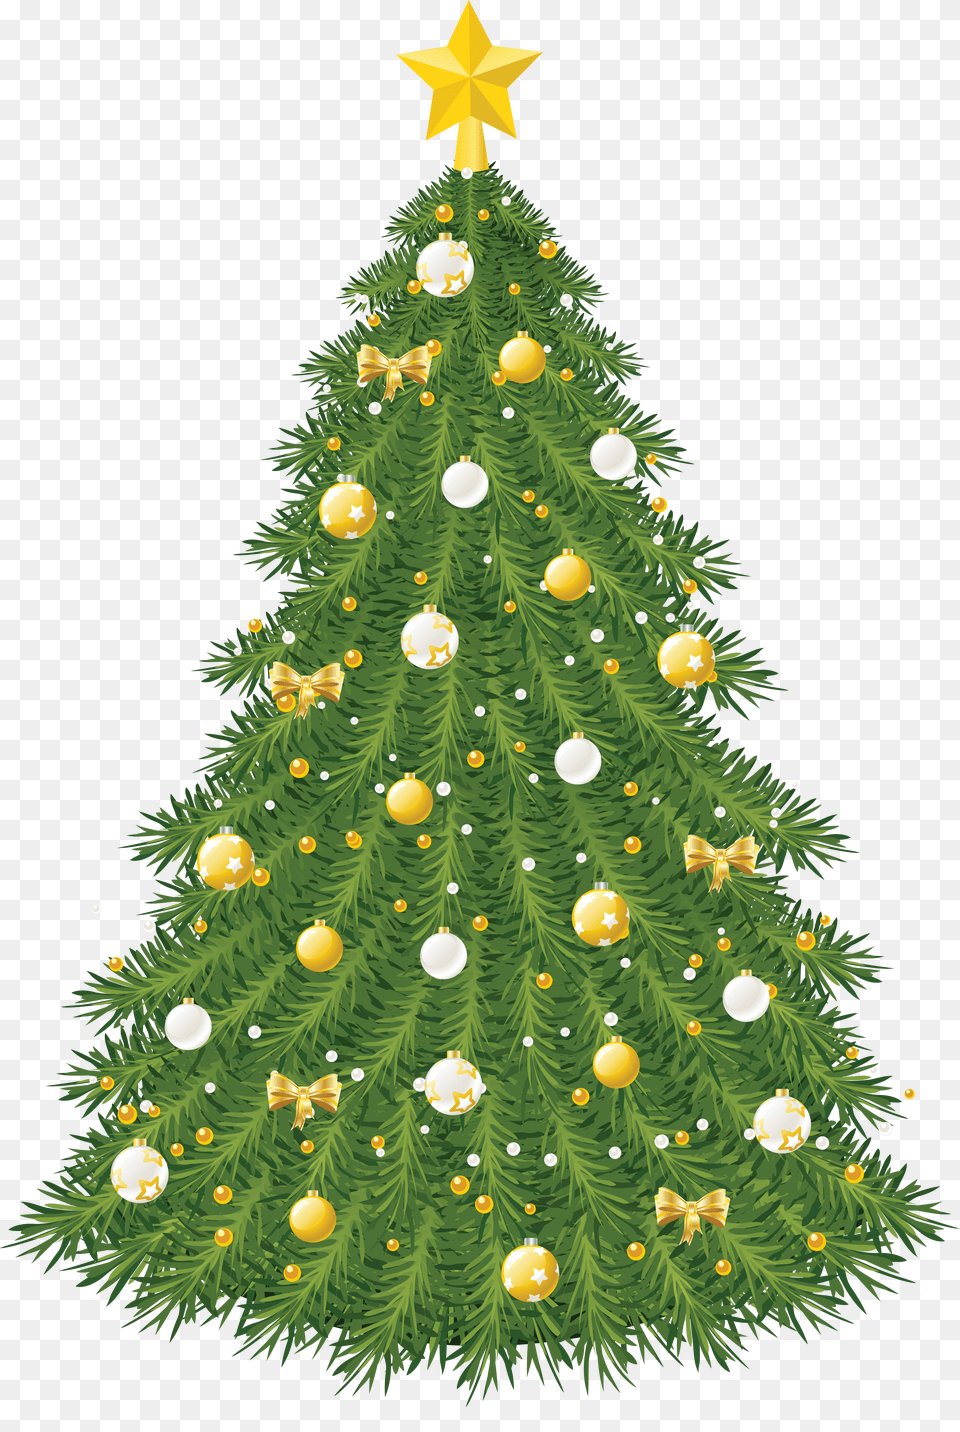 Christmas Tree Png Image